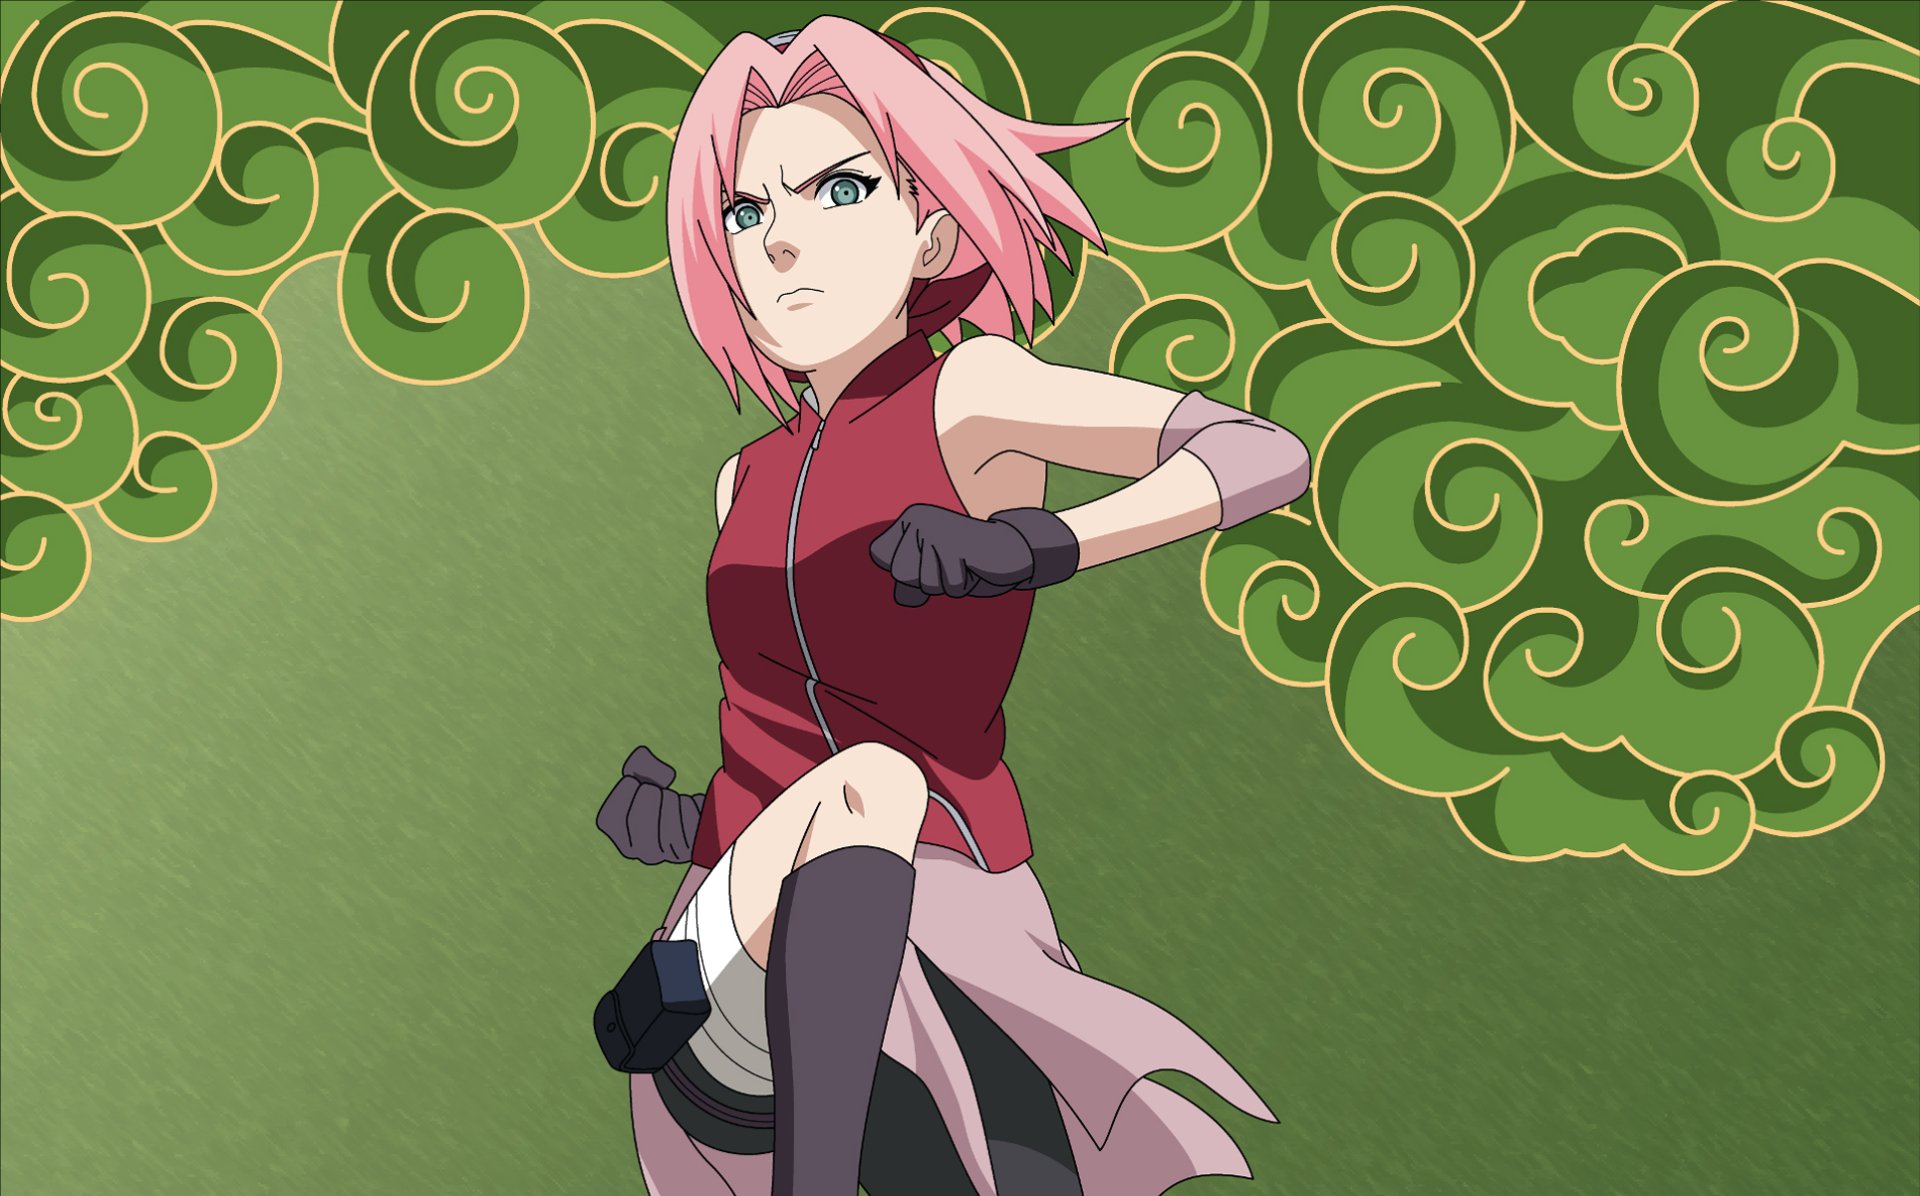 1. Sakura Haruno from Naruto - wide 3